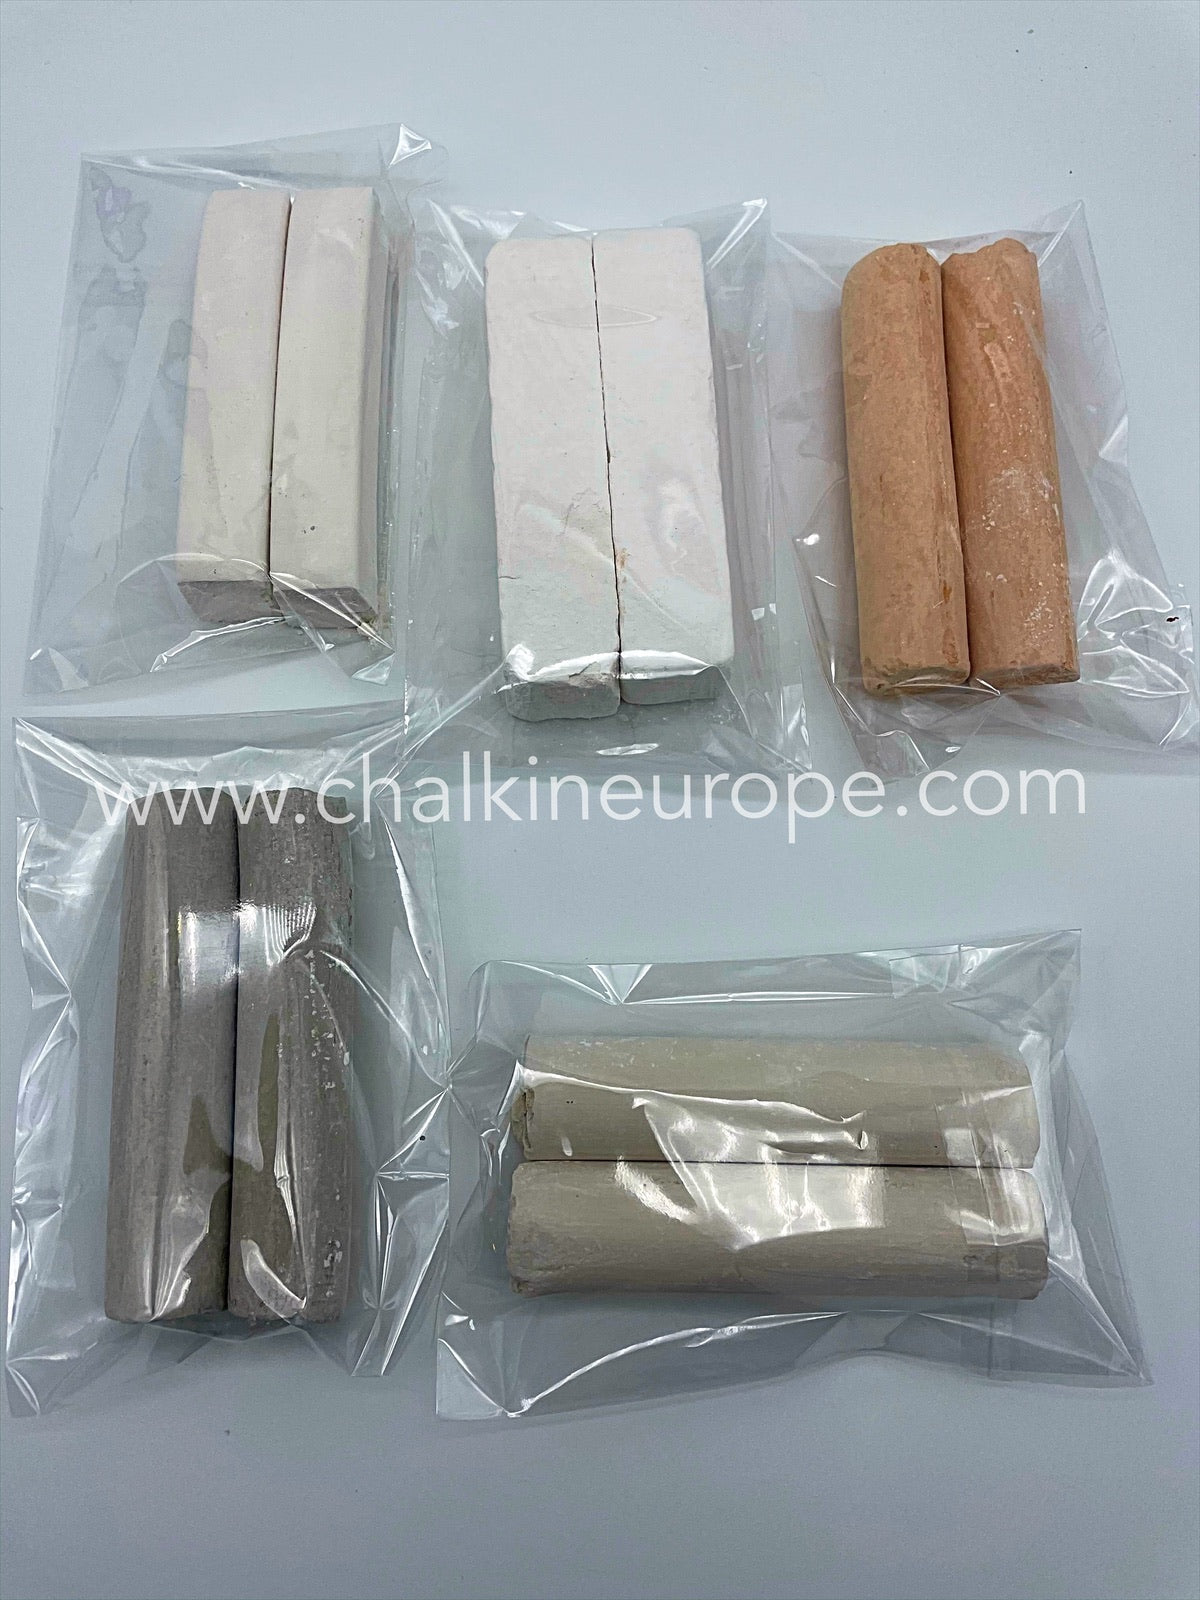 Tipi di argilla commestibile - Chalkineurope